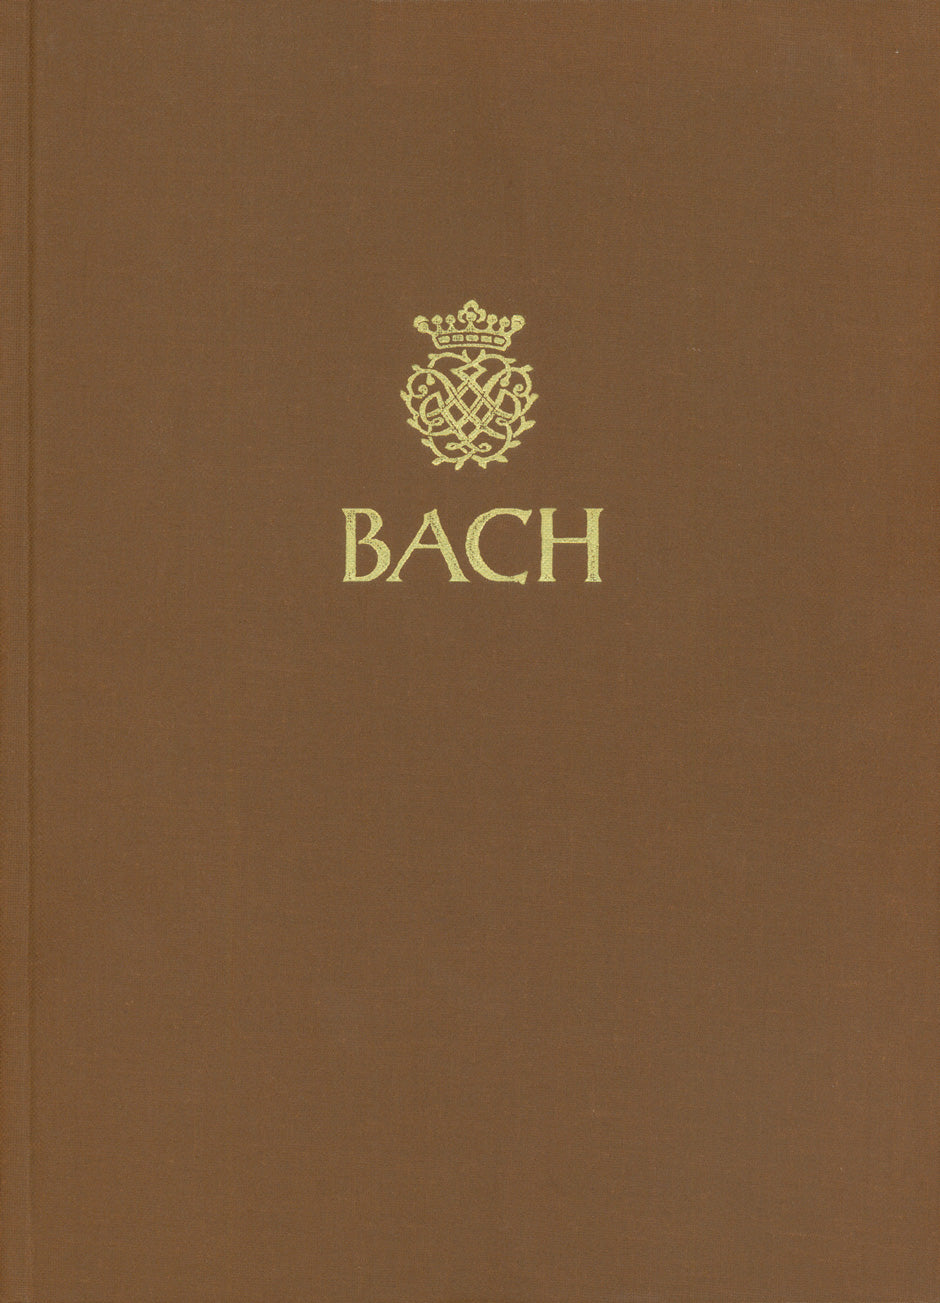 Choräle und geistliche Lieder, Teil 2 -Choräle der Sammlung C.P.E. Bach nach dem Druck von 1784-1787. 370 Choräle. Anhang: 9 Varianten und Sätze aus verschiedenen Sammlungen-